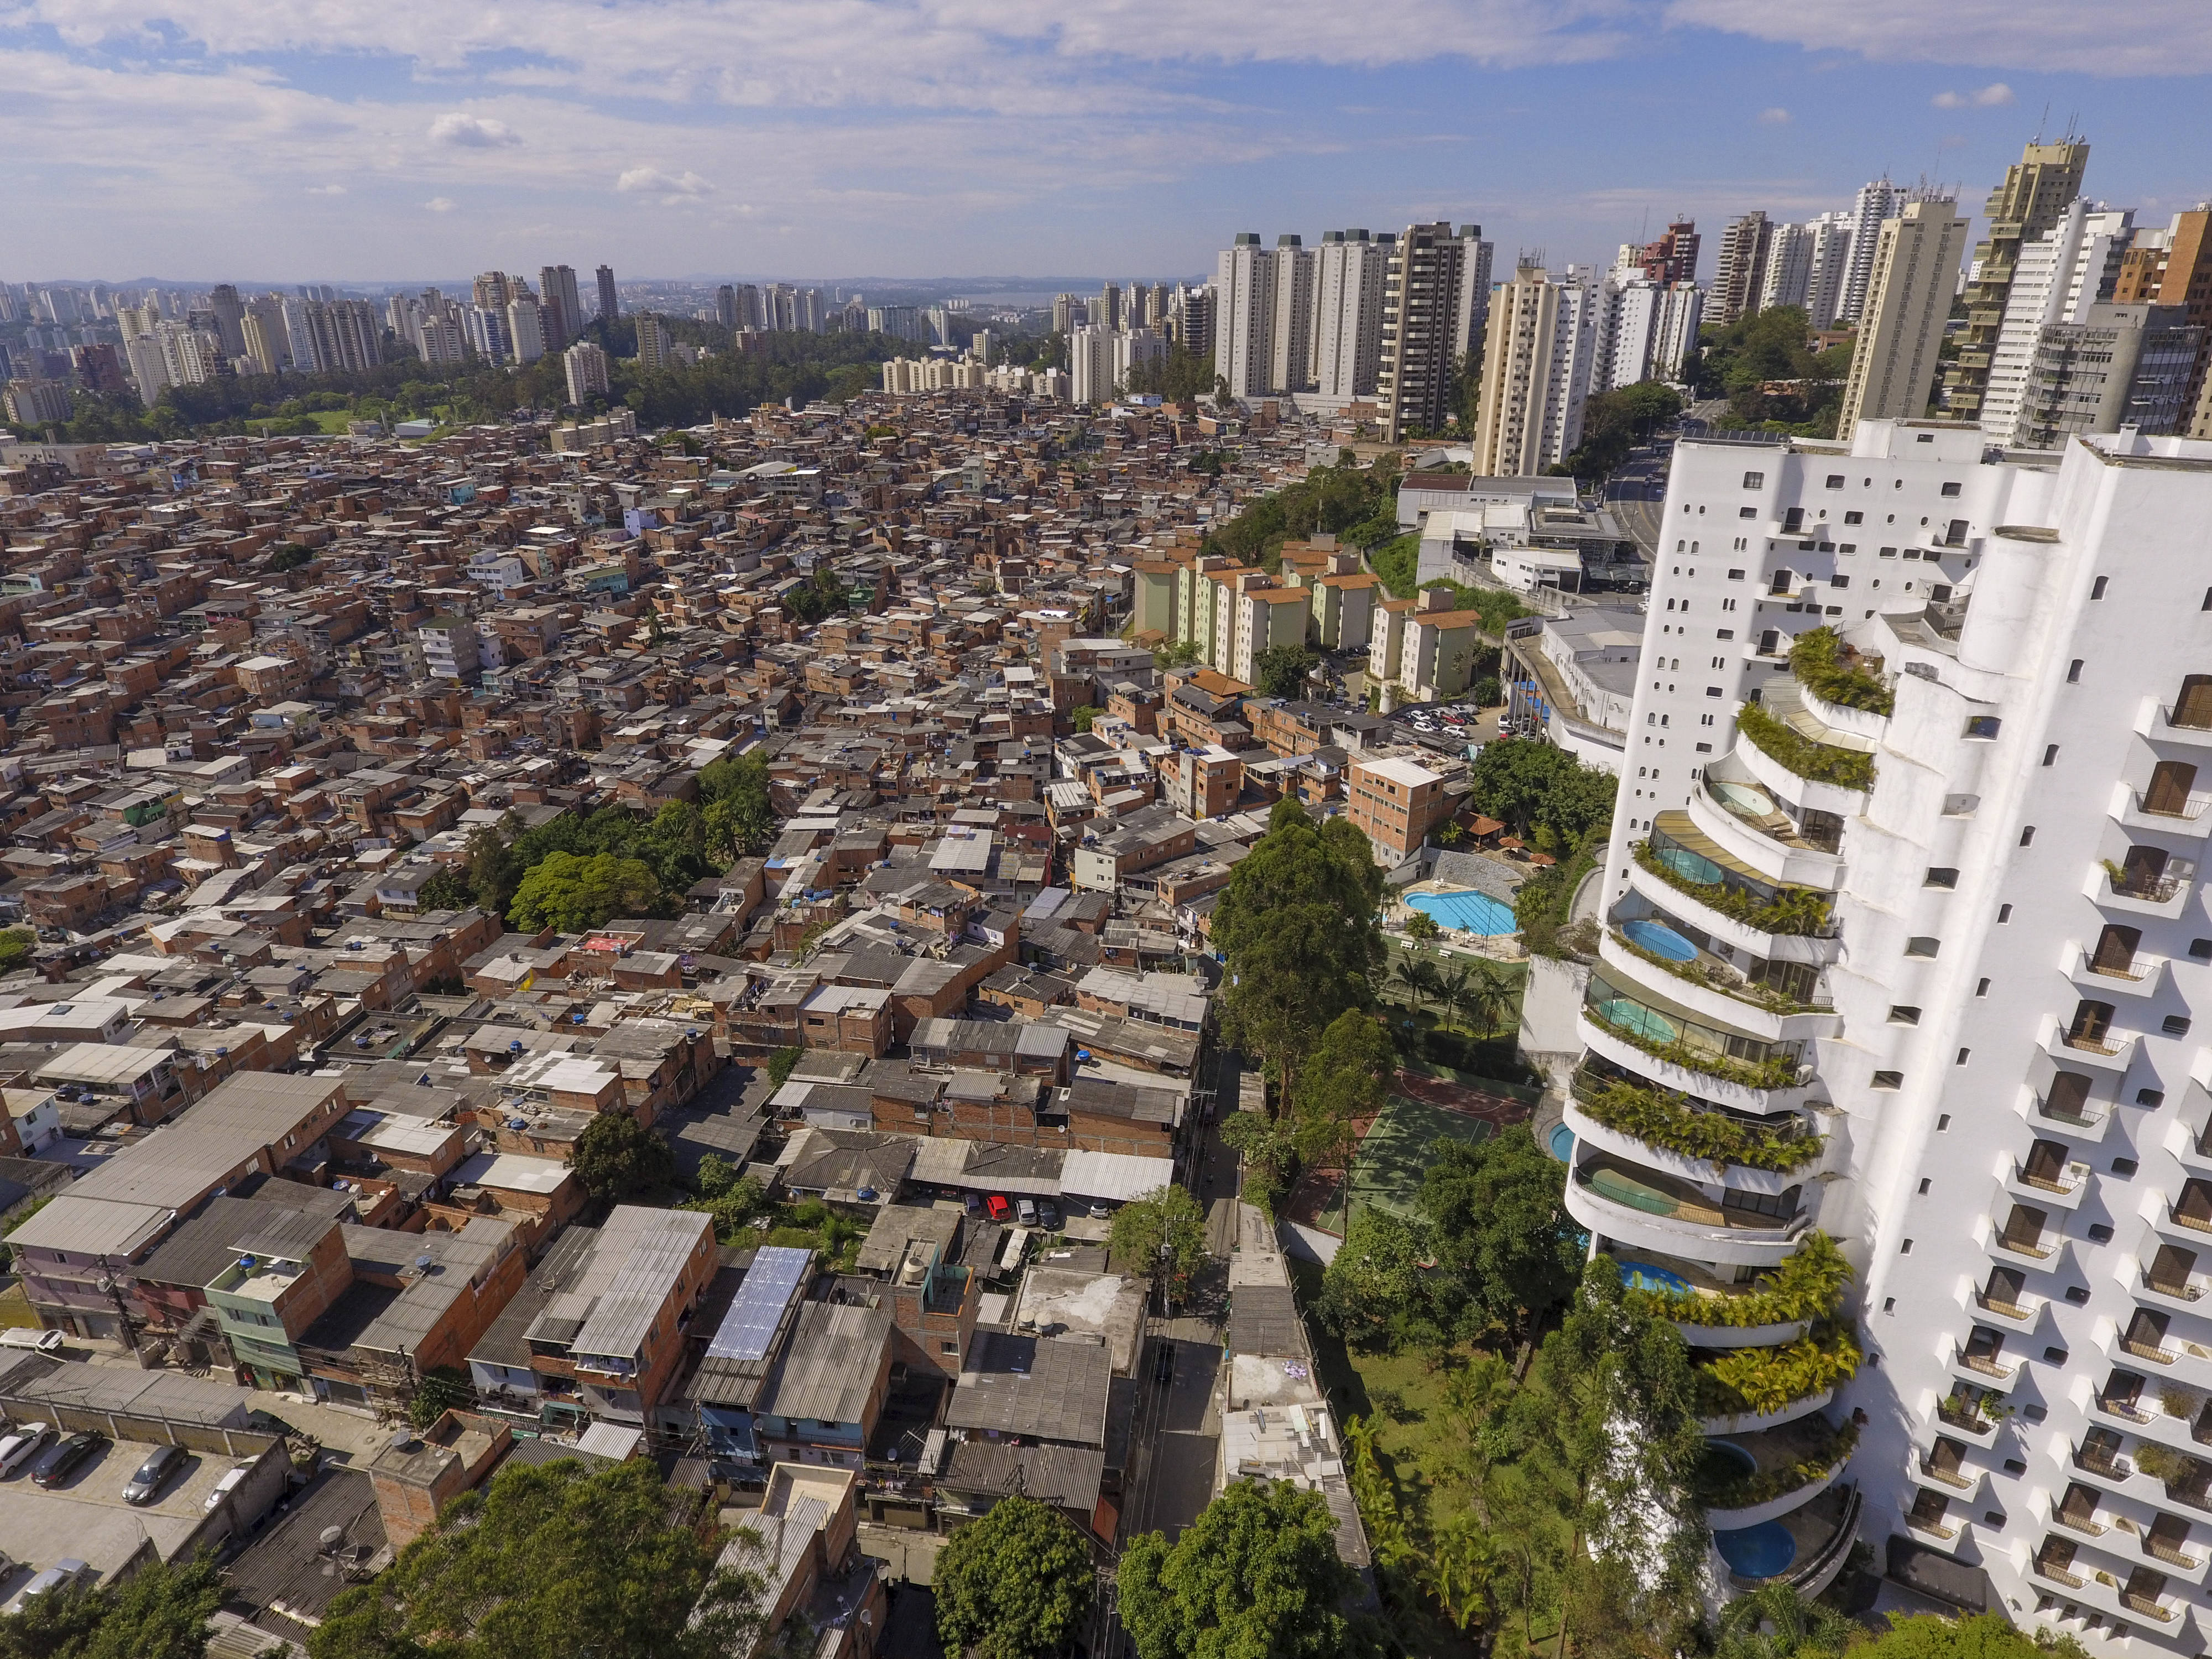 Brasil cai no ranking global de desenvolvimento | Jornal Folha de Londrina | Últimas Notícias de Londrina e do Paraná